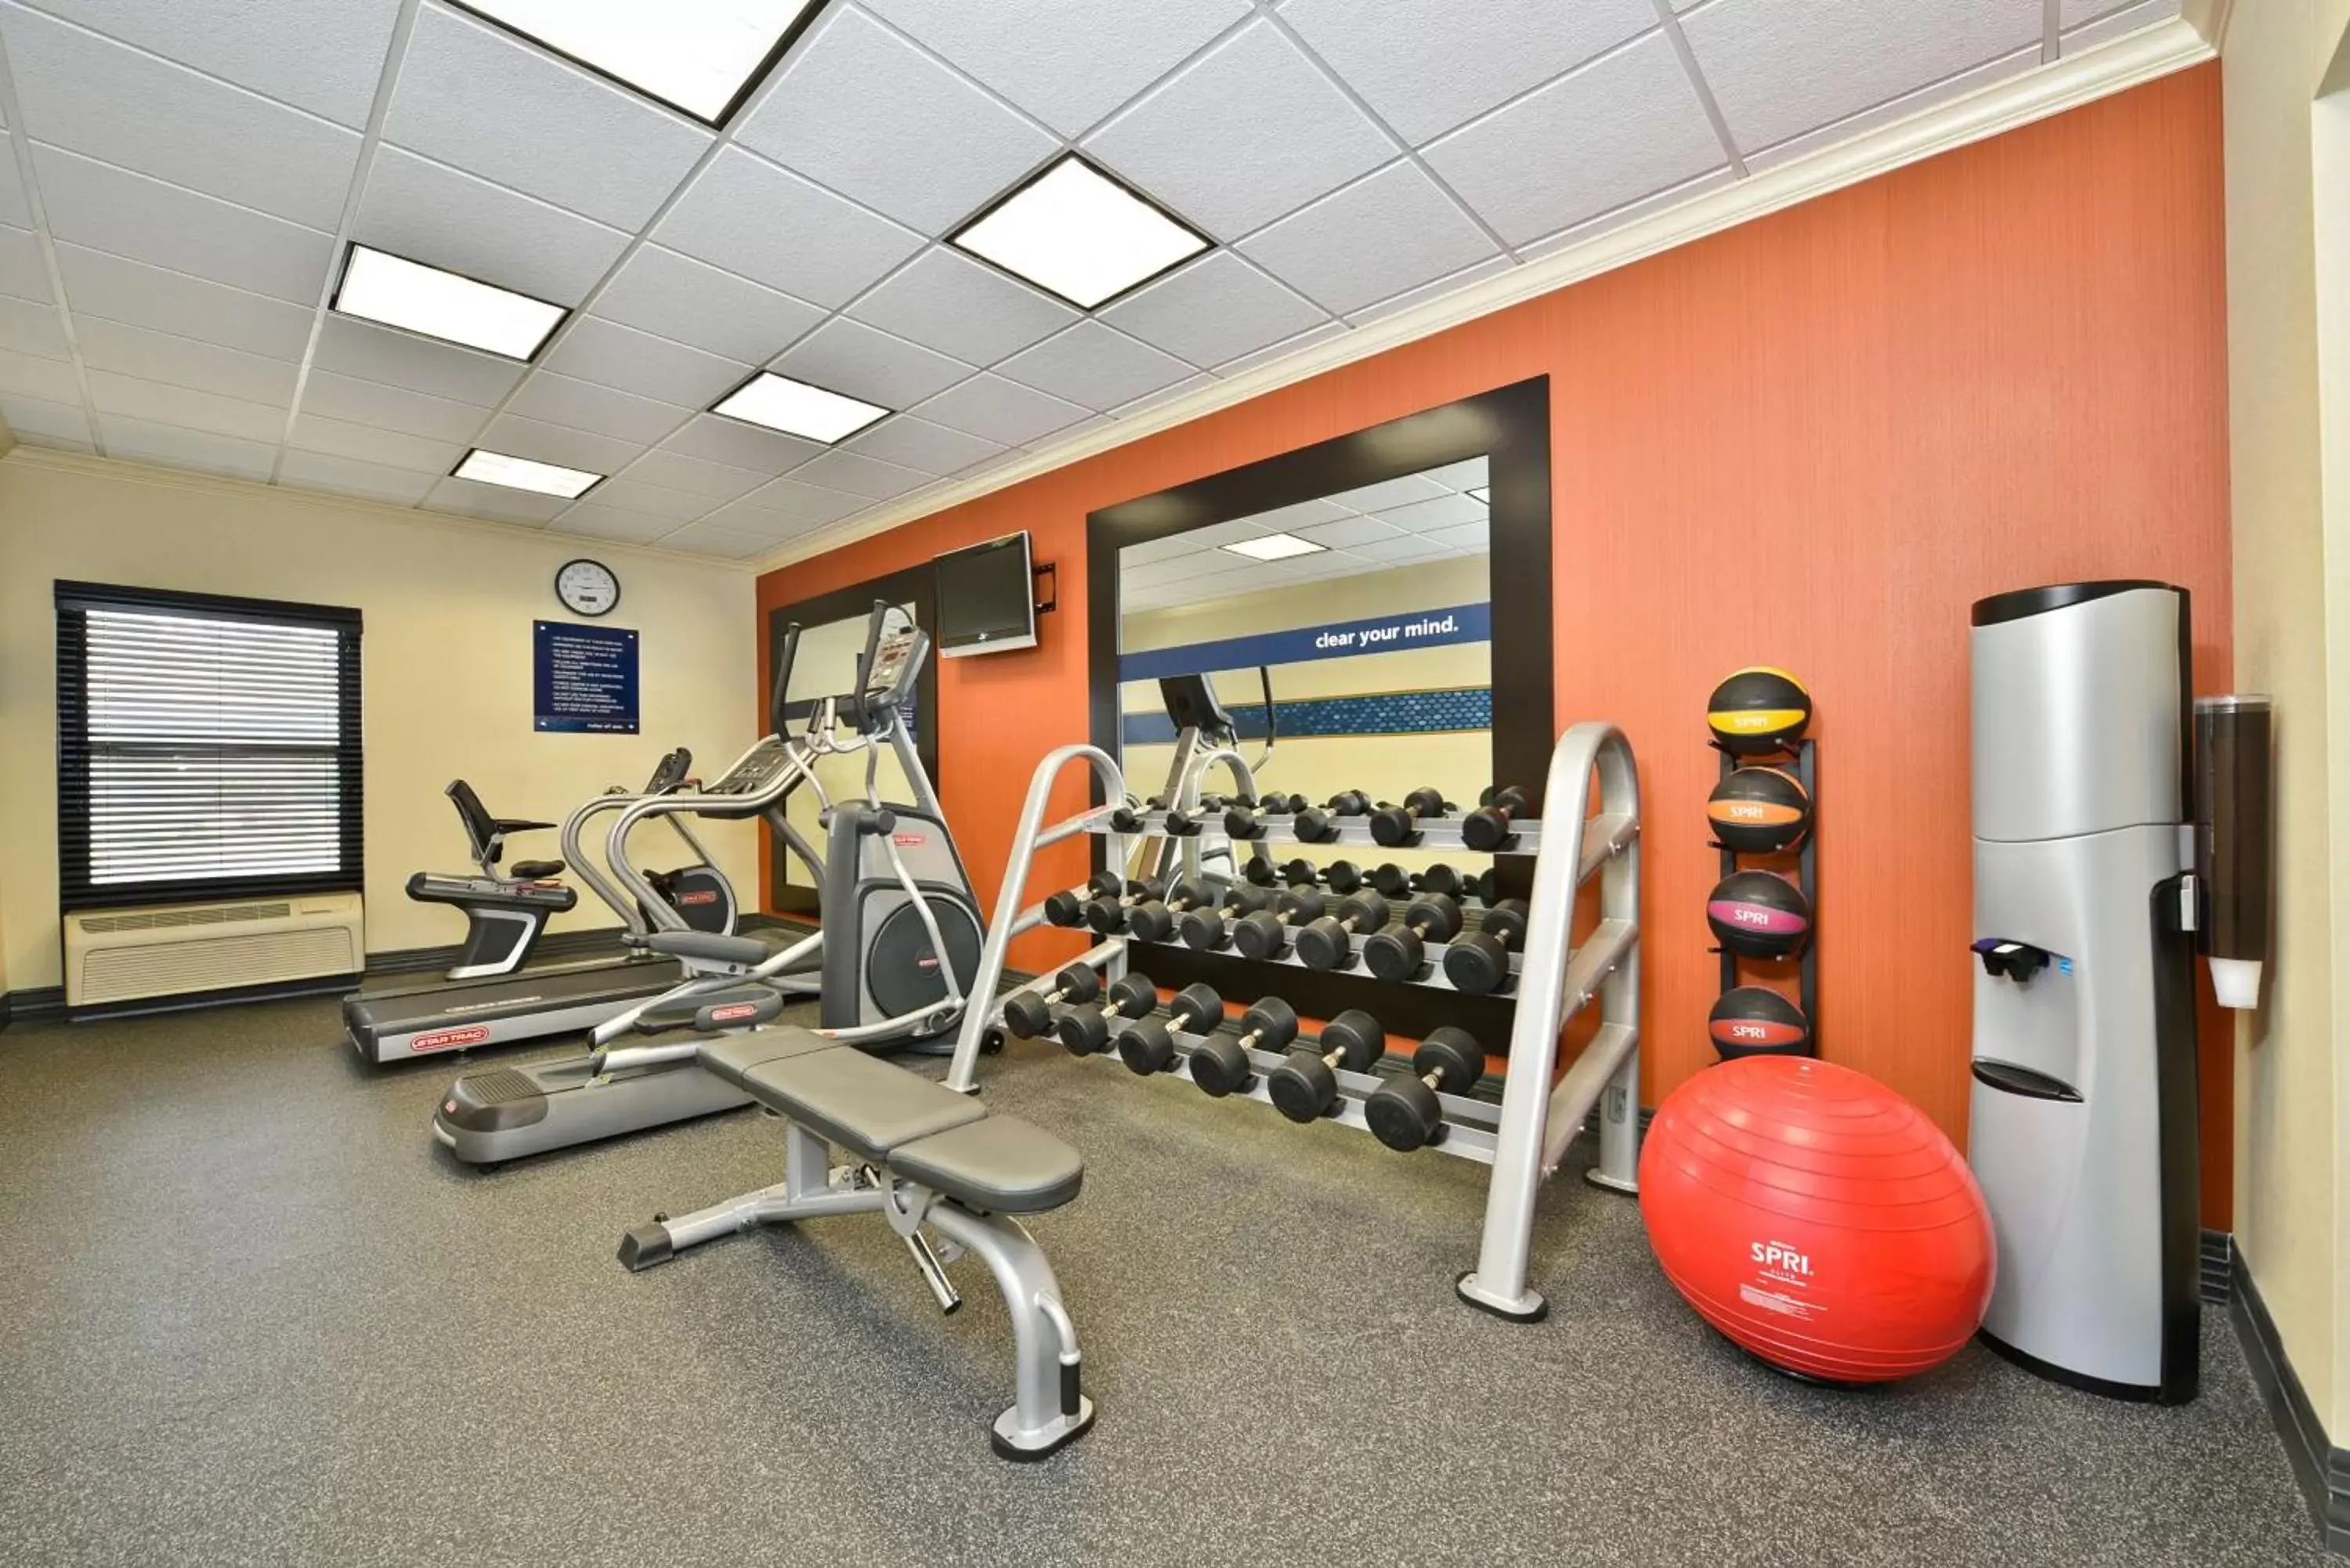 Fitness centre/facilities, Fitness Center/Facilities in Hampton Inn - Greenville